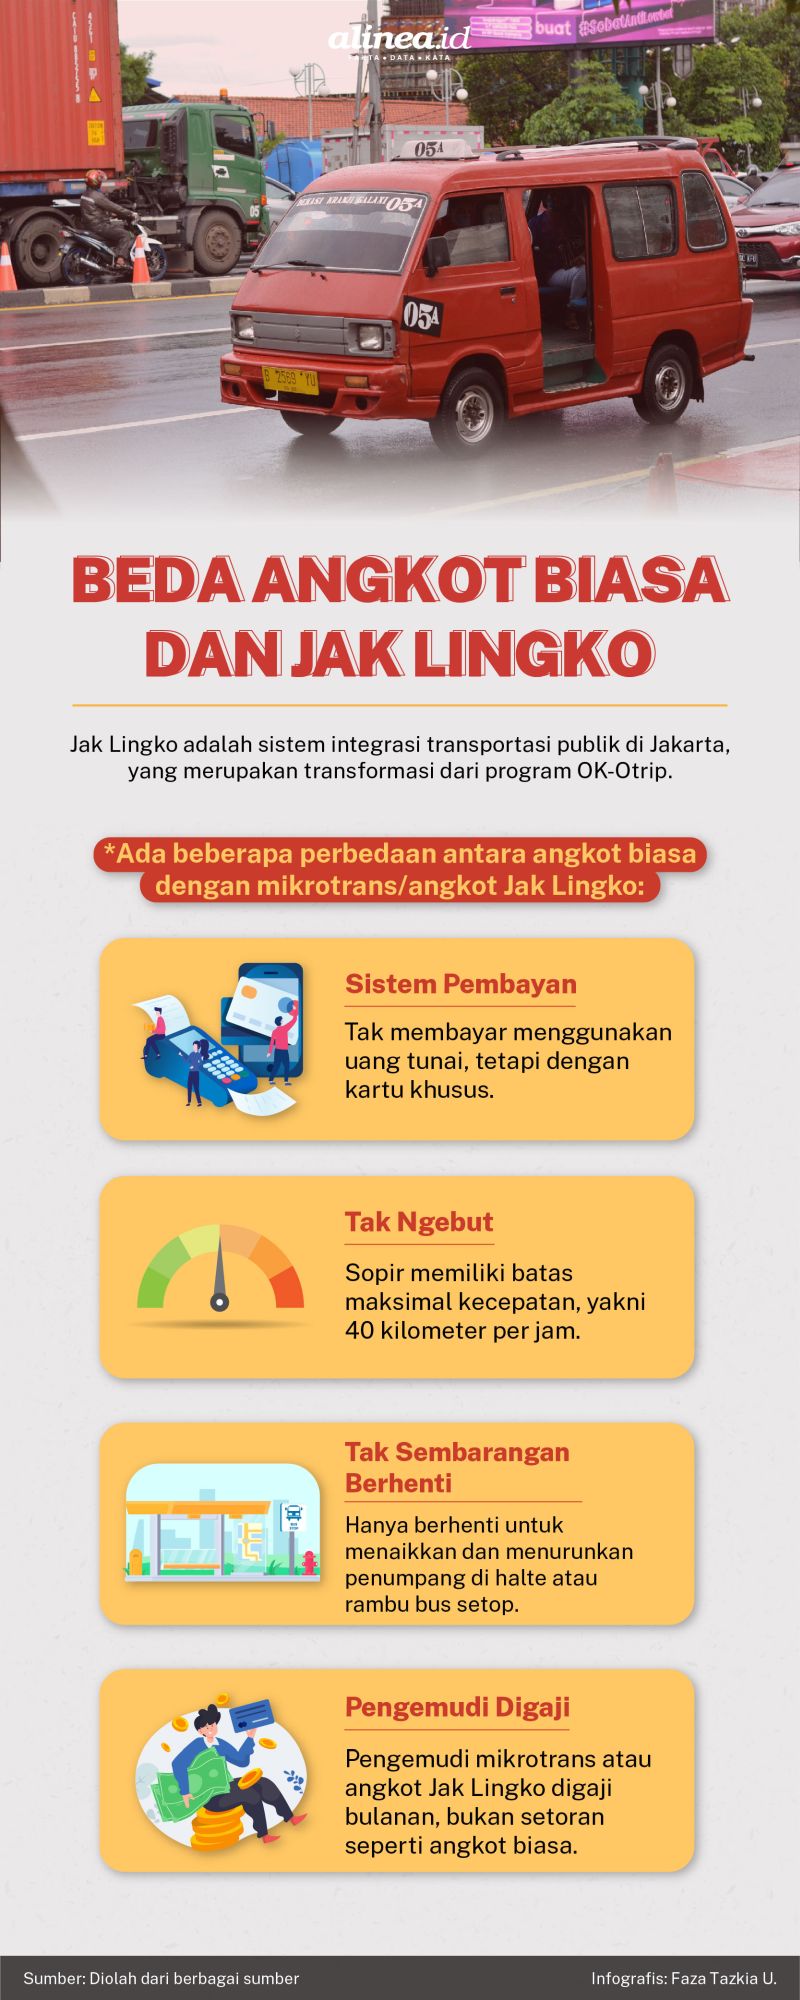 Infografik Alinea.id/Faza Tazkia U.